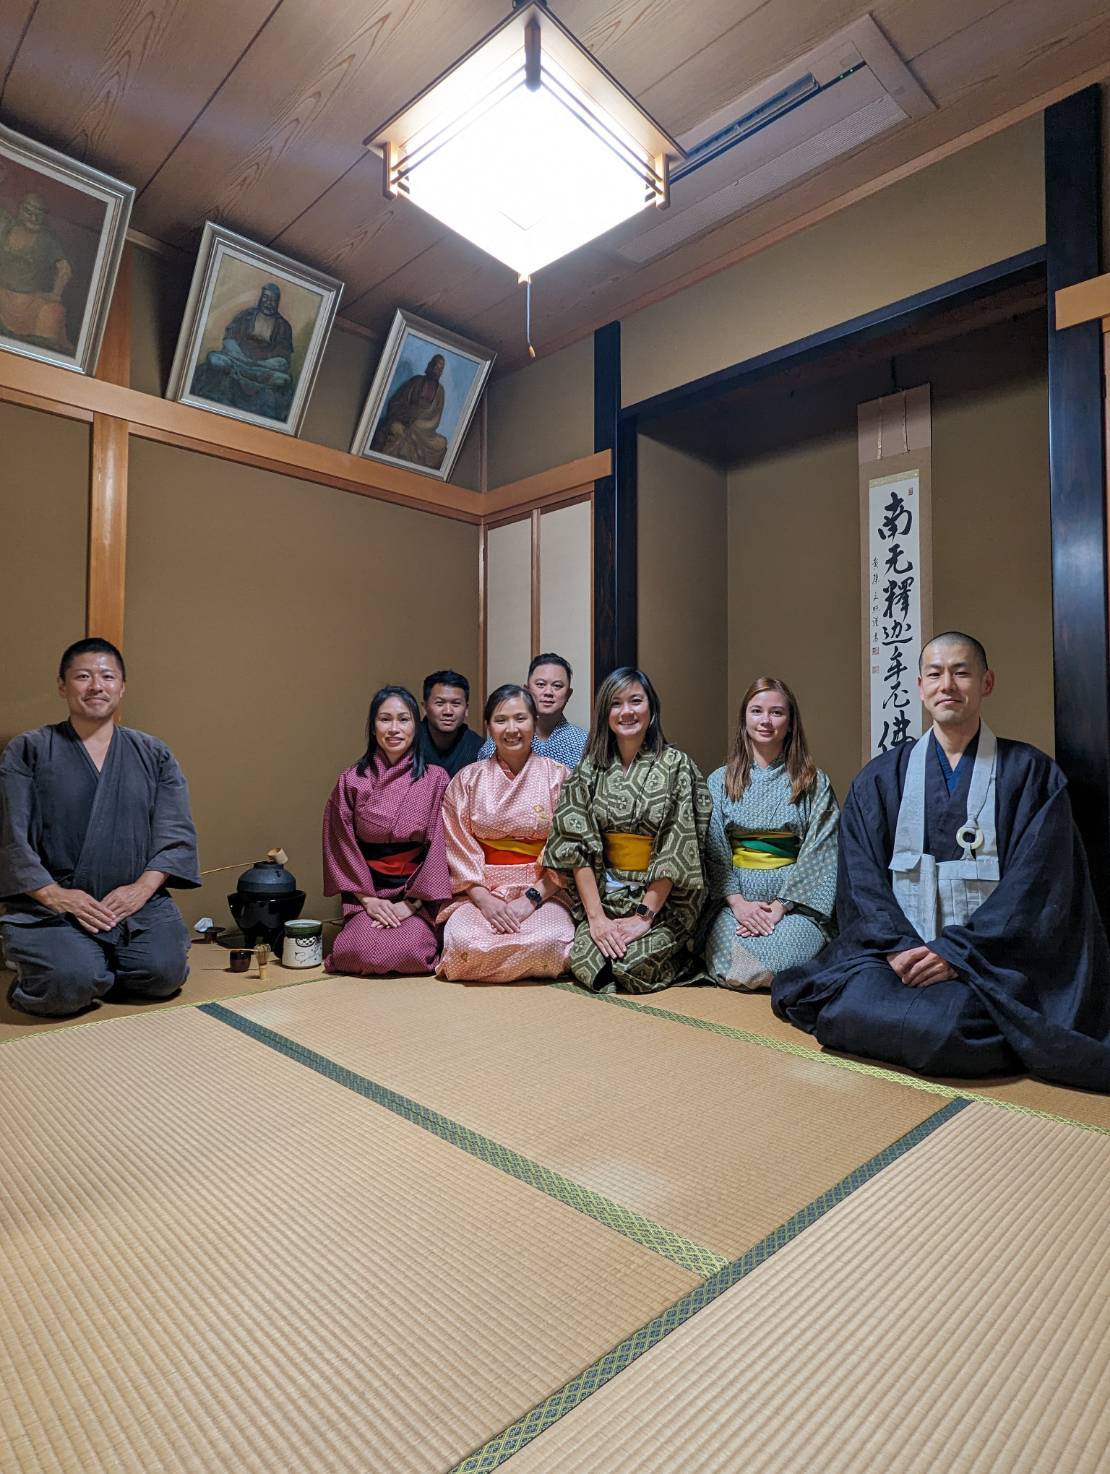 京都宇治・宝善院での茶道体験の様子です。訪日外国人の方たちが日本の文化を楽しまれています。